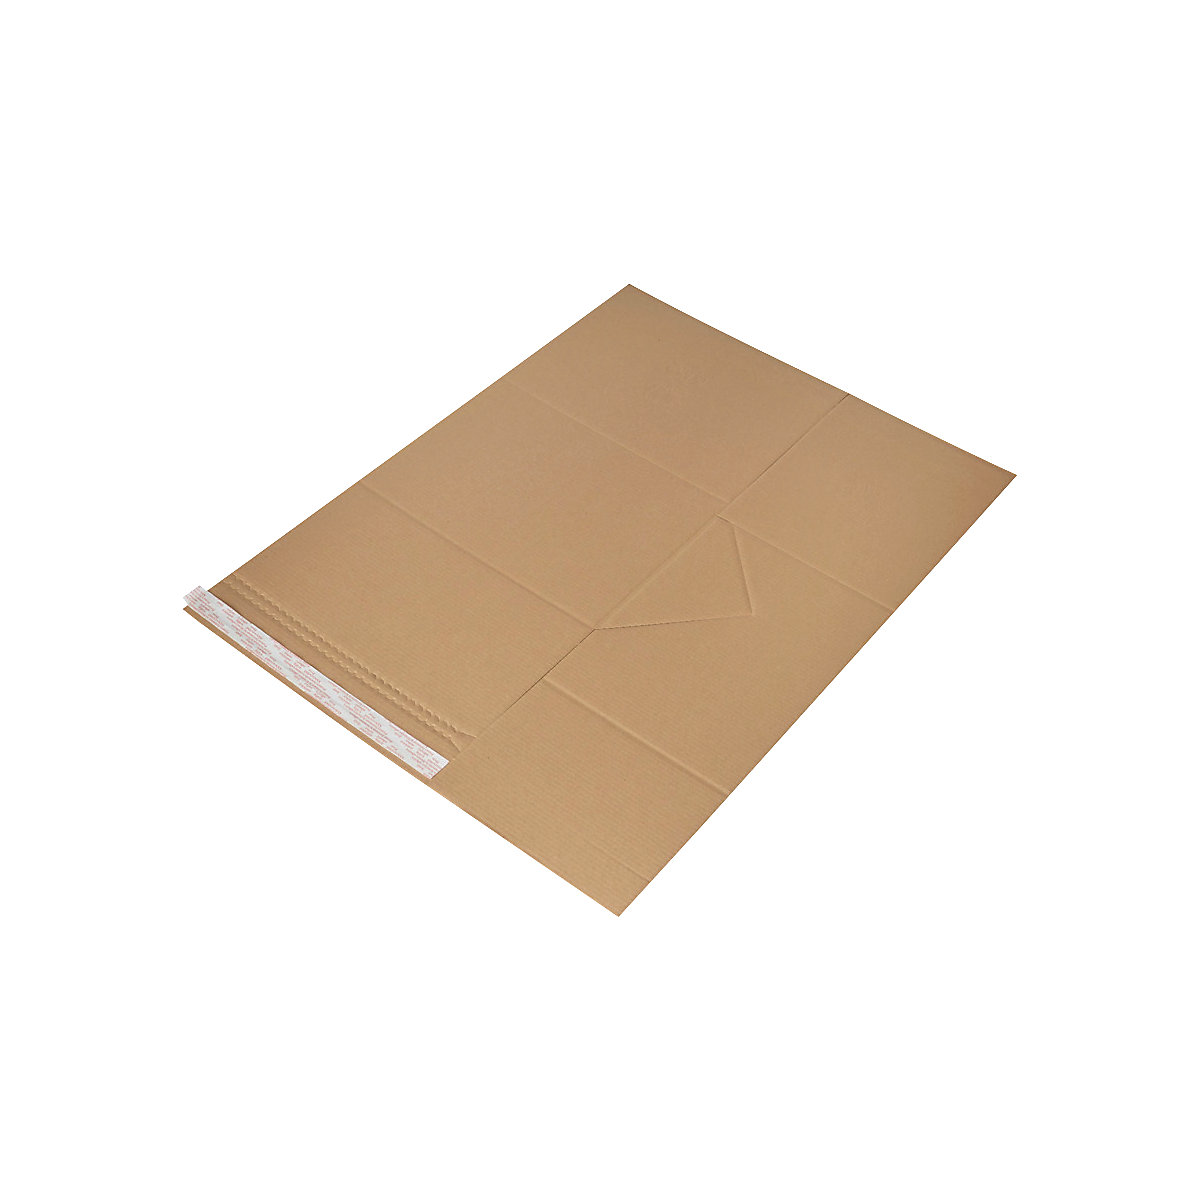 Imballaggio universale Drehfix – flow, con chiusura autoadesiva, lungh. x largh. 330 x 260 mm, a partire da 200 pz.-4